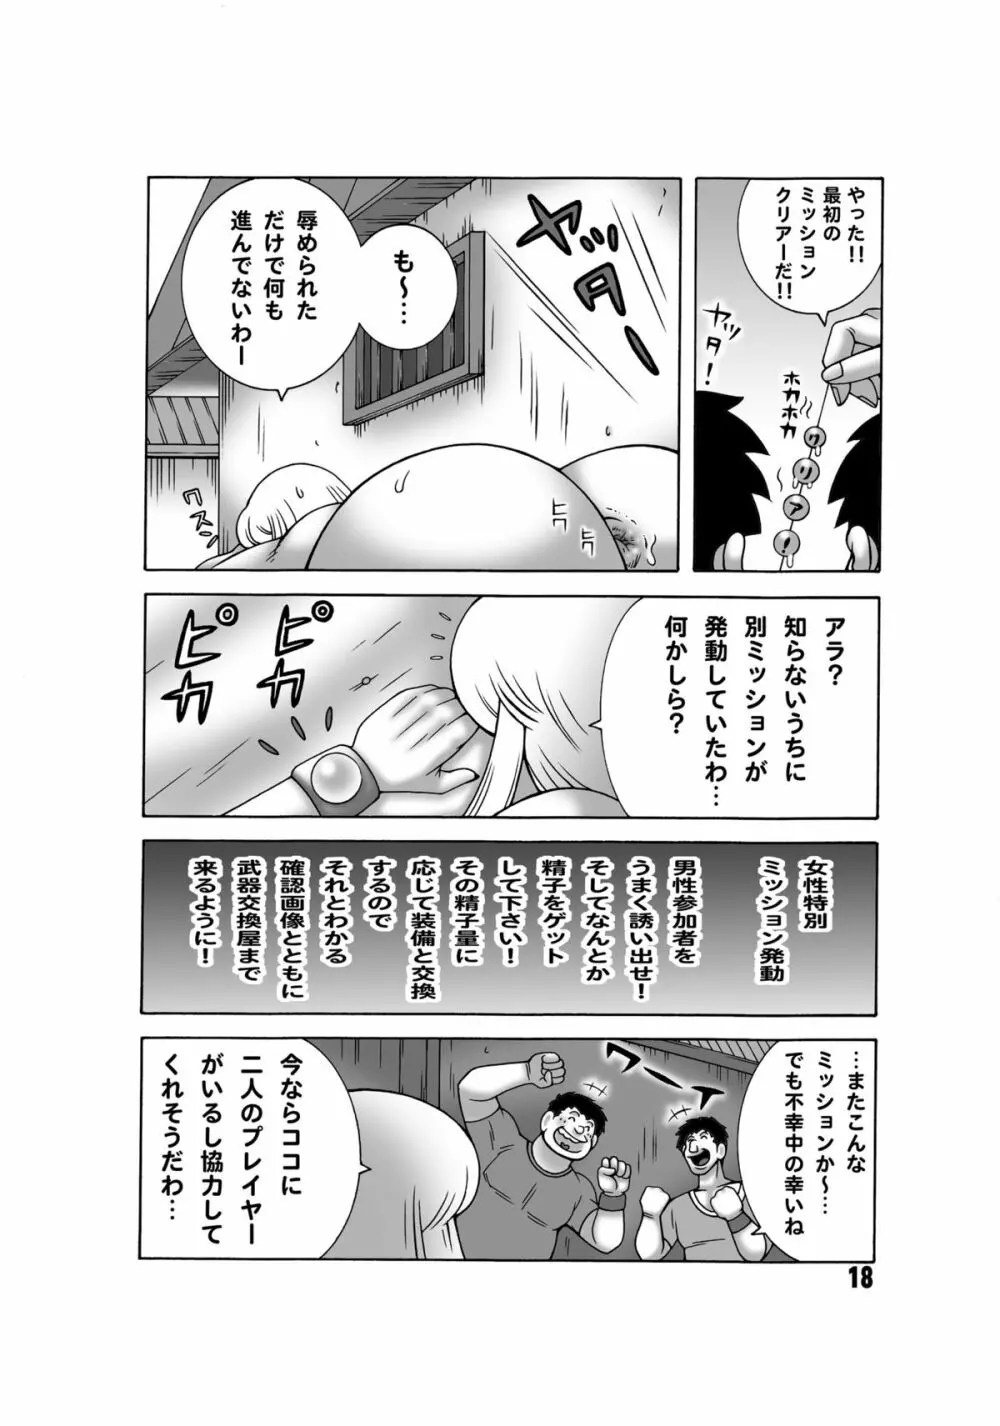 こち亀ダイナマイト 13 - page17